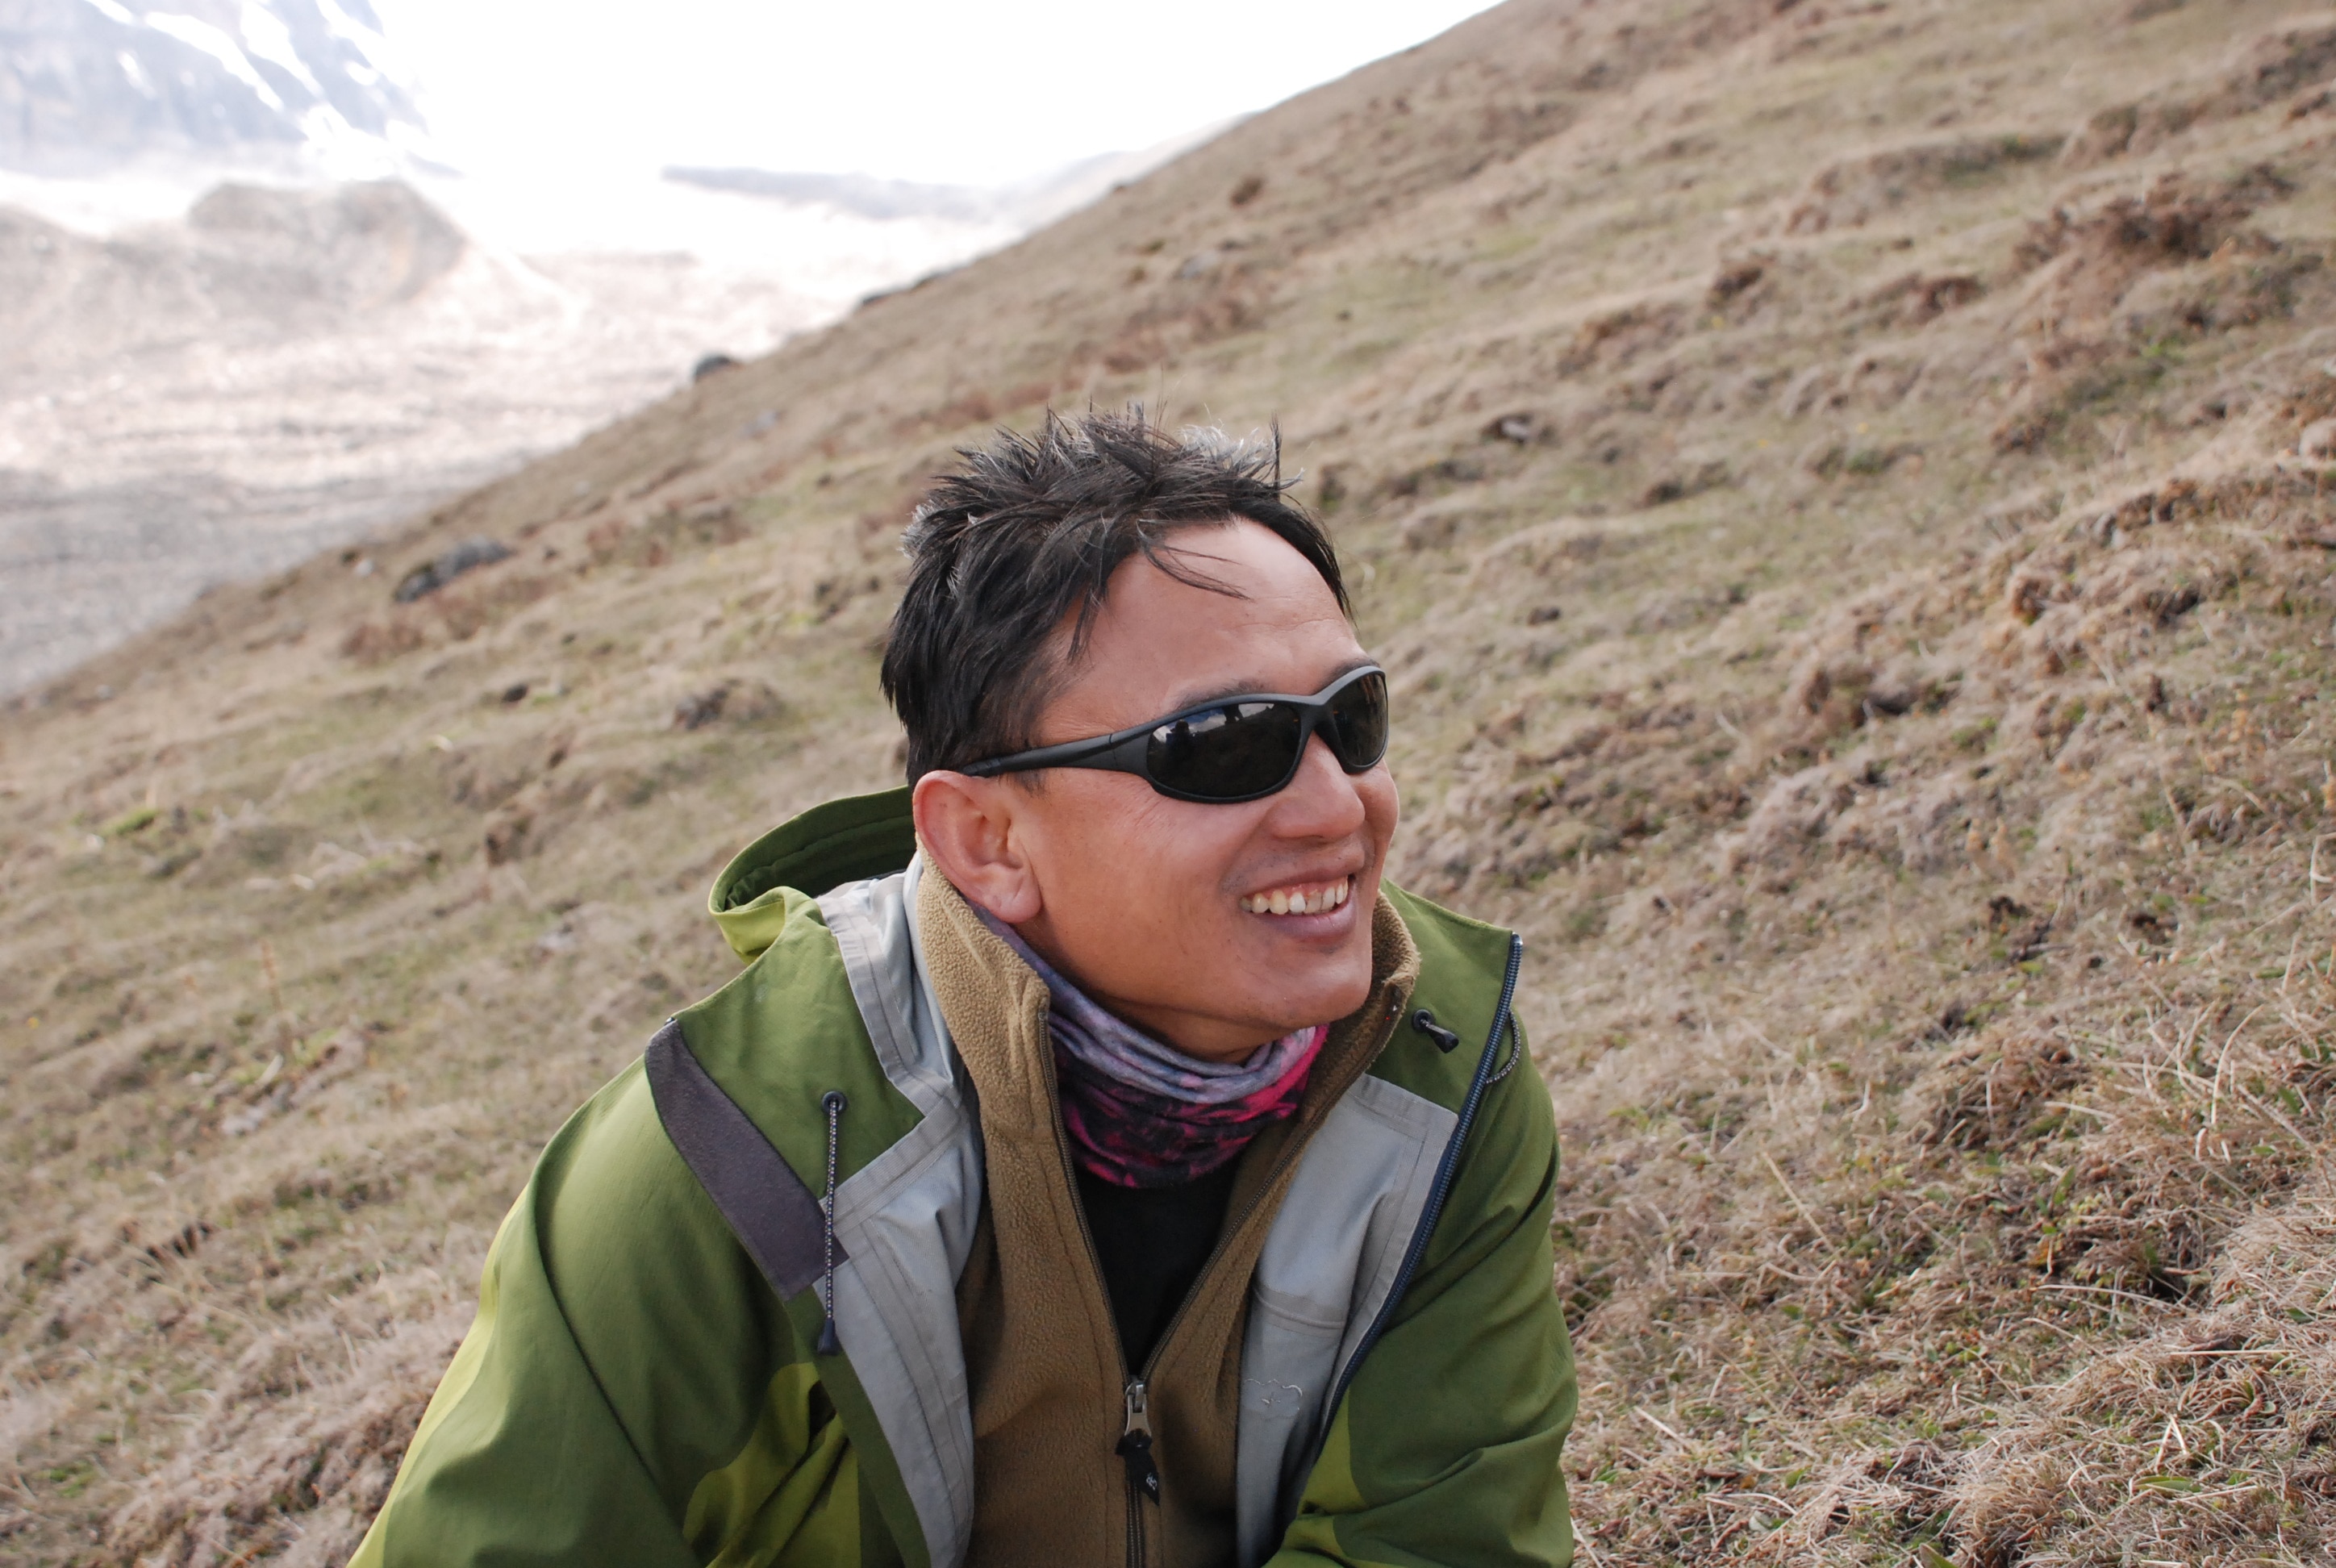 Nepal: Ein lokaler Guide über das Geschäft mit dem Trekkingtourismus